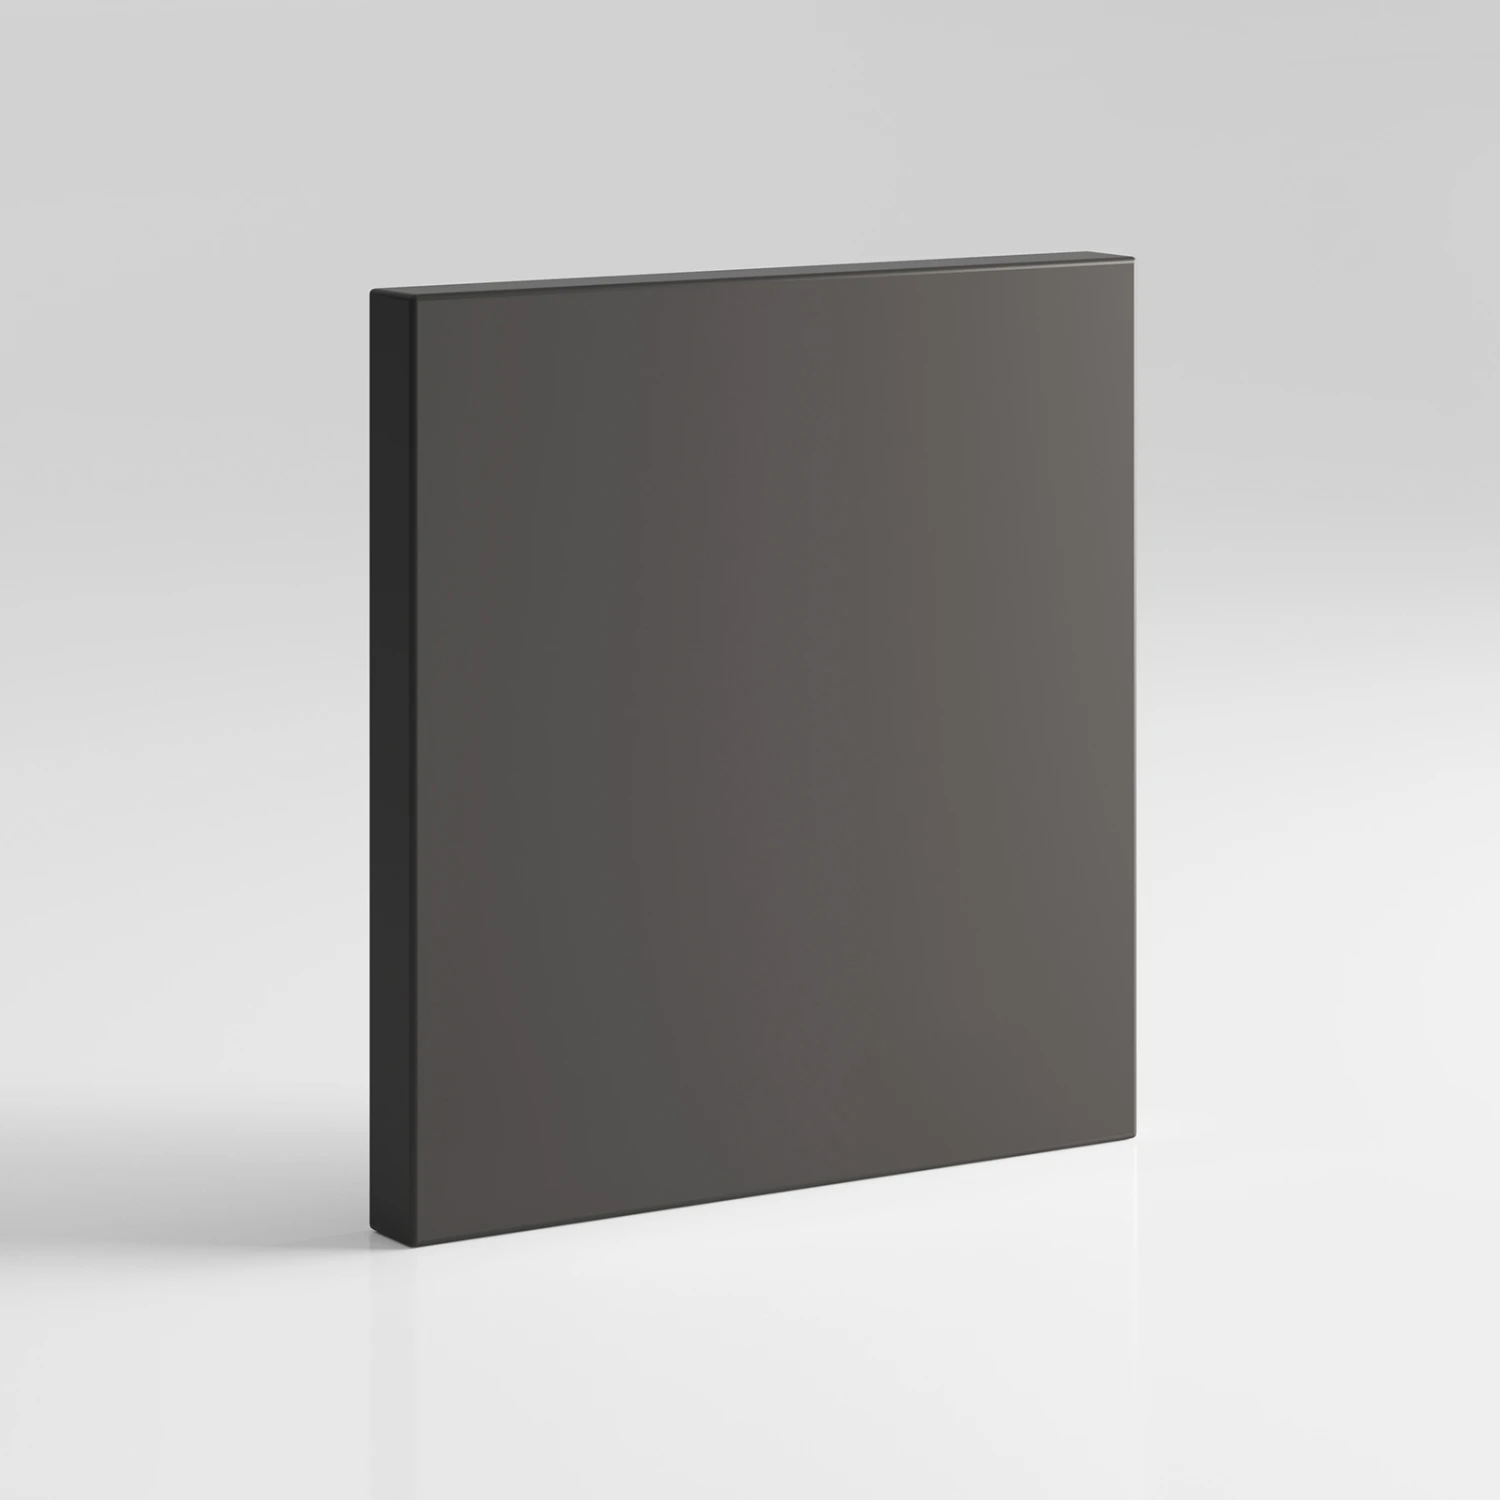 Cabinet 100 cm (Standard 45 cm depth) Anthracite color